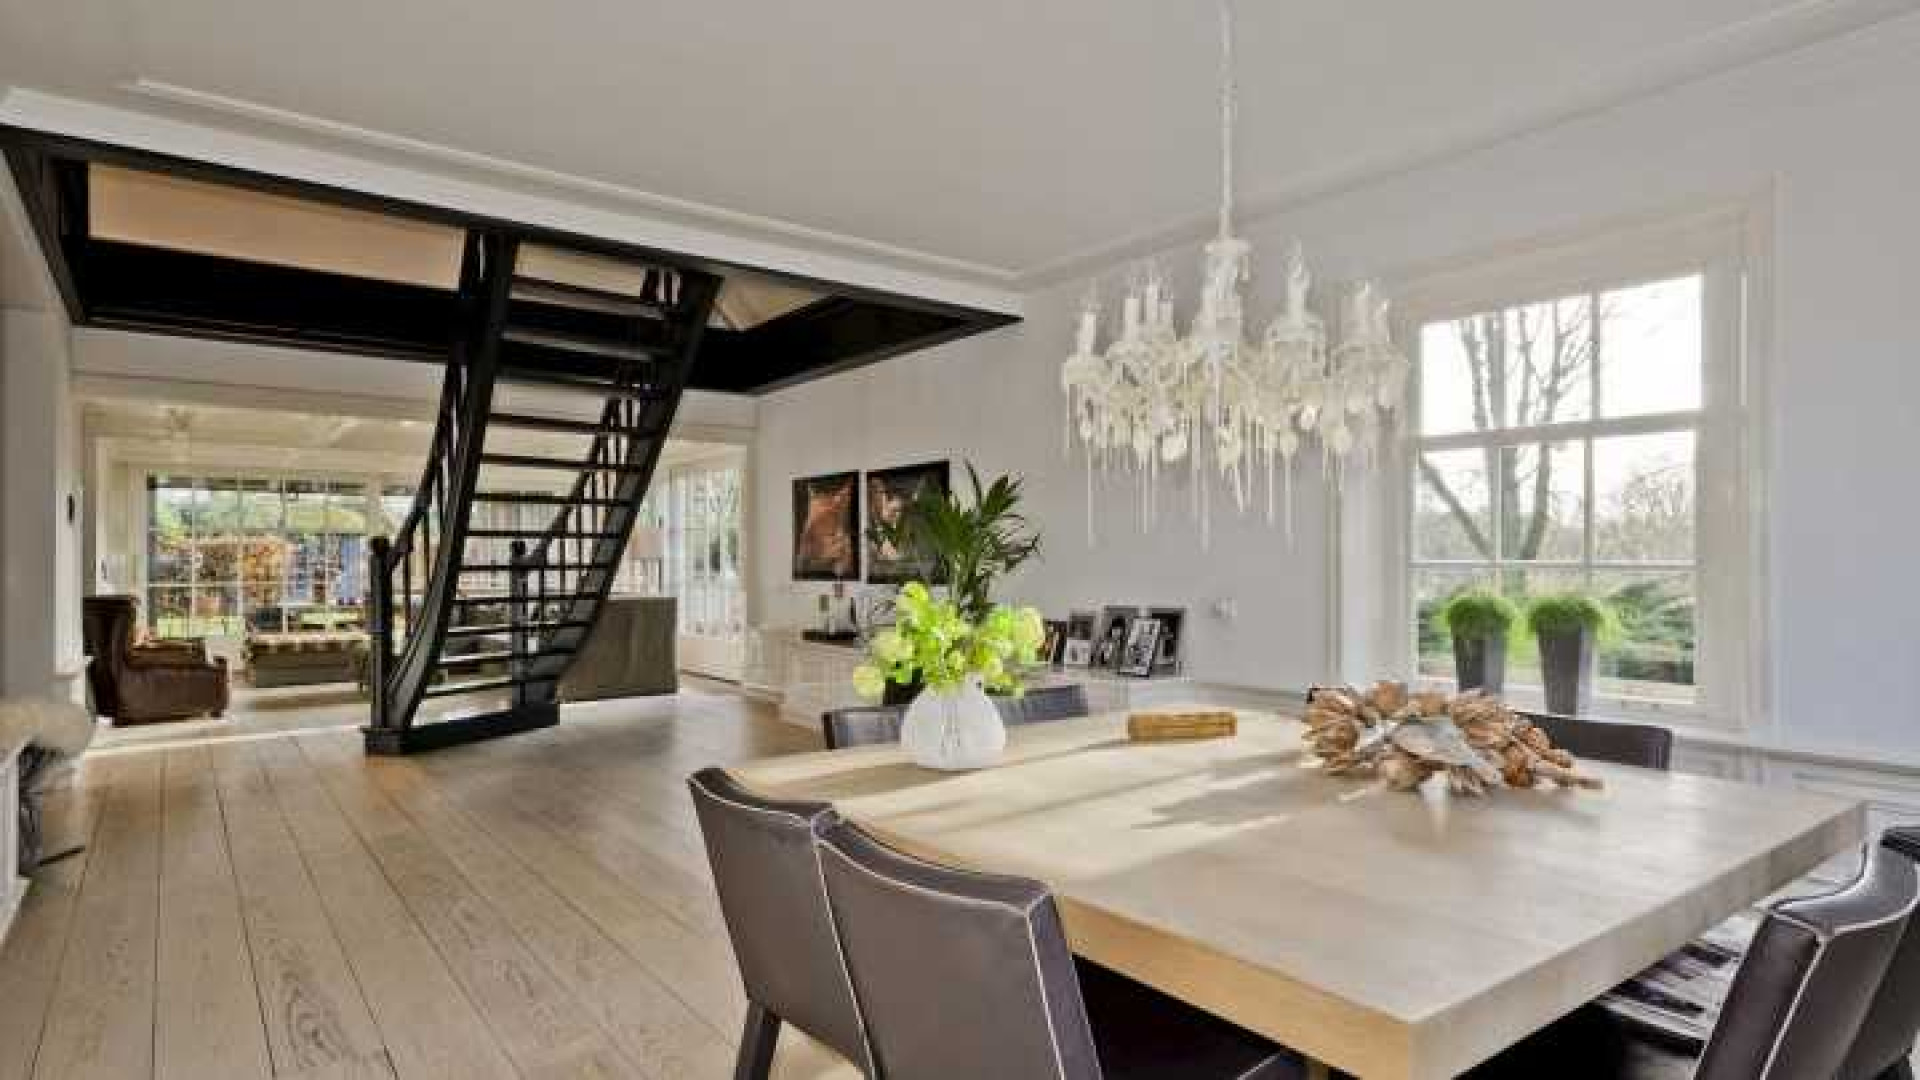 Henny Huisman verkoopt zijn villa zwaar onder de vraagprijs. Zie foto's